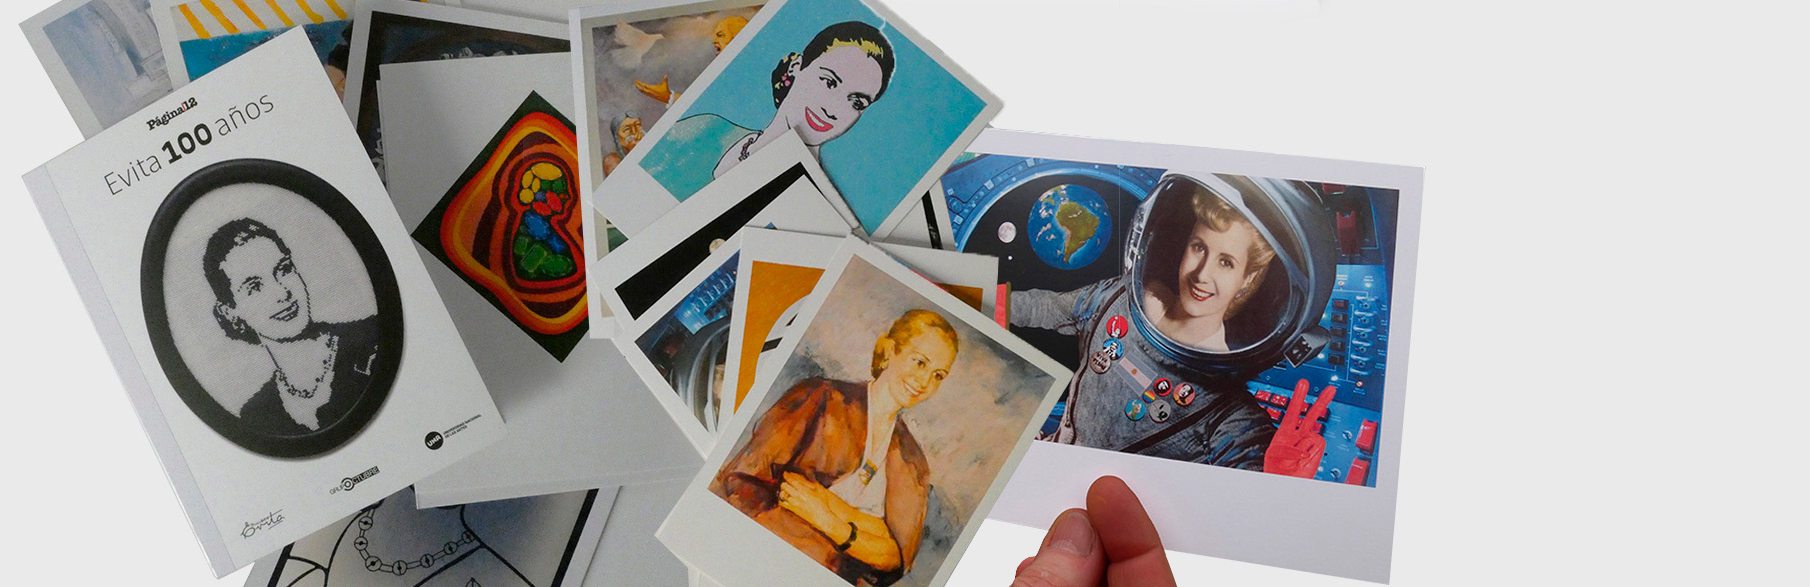 Presentación del libro de postales “Evita 100 años”